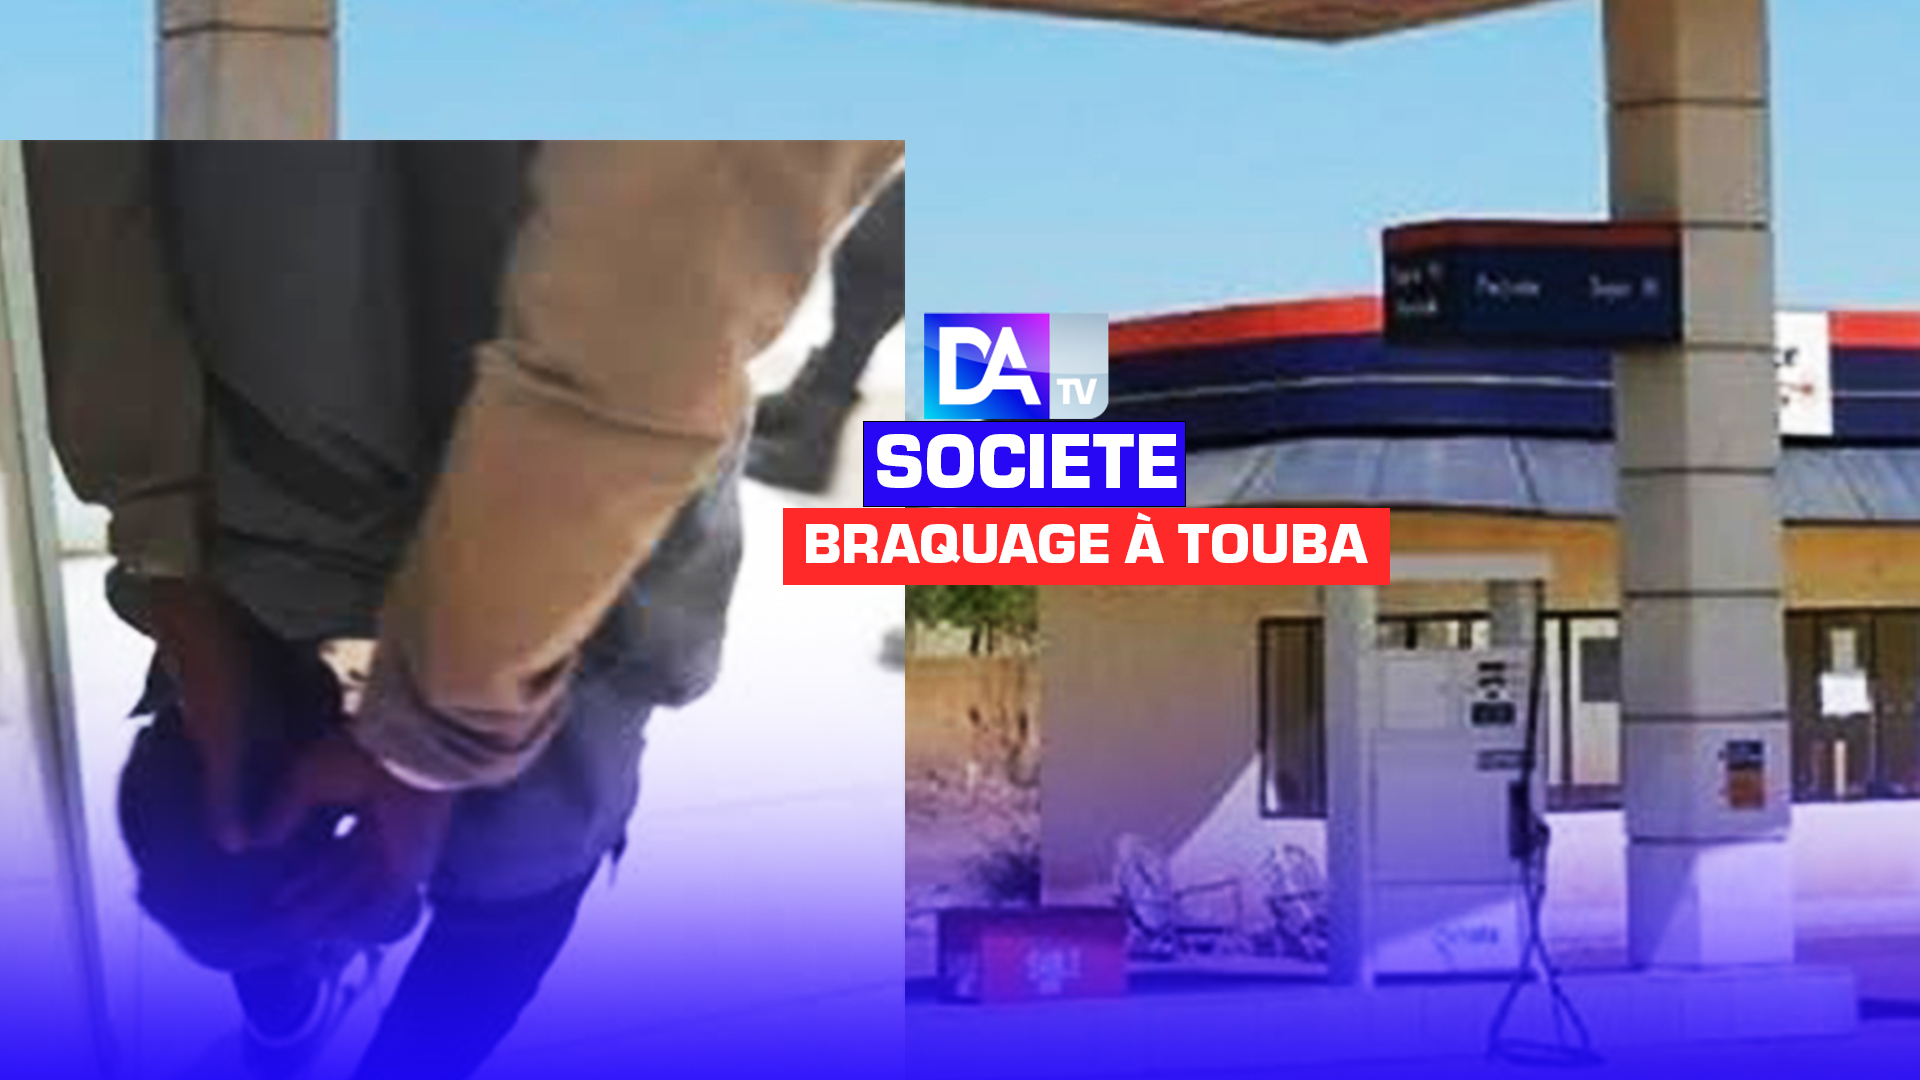 BRAQUAGE À TOUBA - Des malfrats attaquent une station d'essence, tirent des balles, blessent une personne  et emportent le coffre-fort